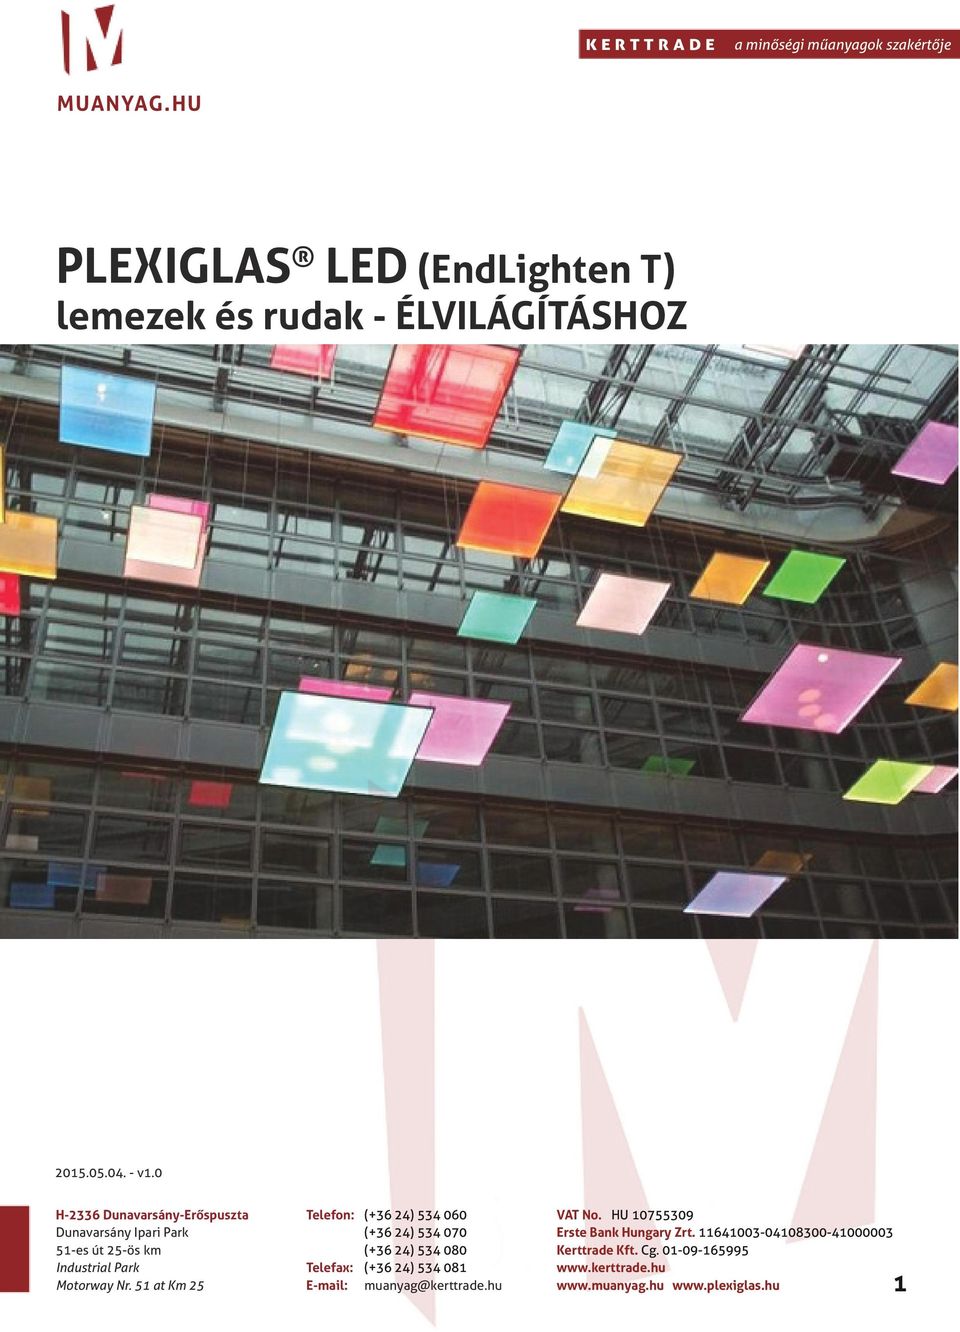 PLEXIGLAS LED (EndLighten T) lemezek és rudak - ÉLVILÁGÍTÁSHOZ - PDF Free  Download